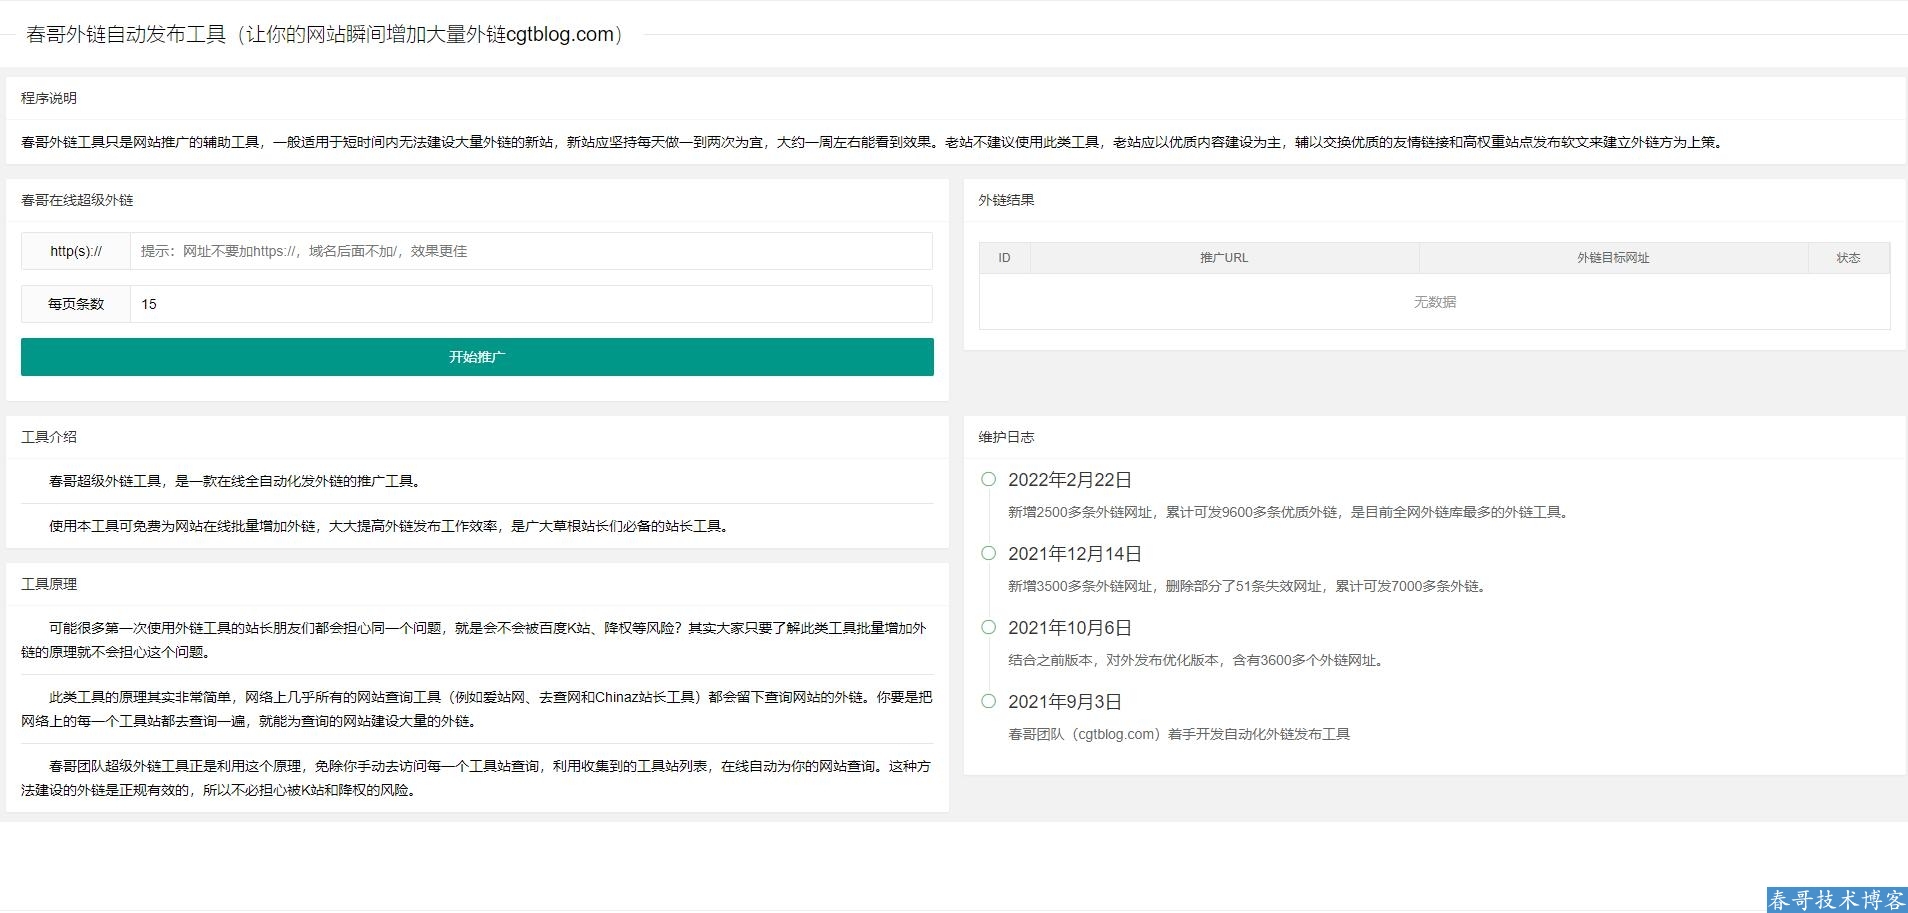 春哥SEO全自动发布外链工具增加网站权重网站源码